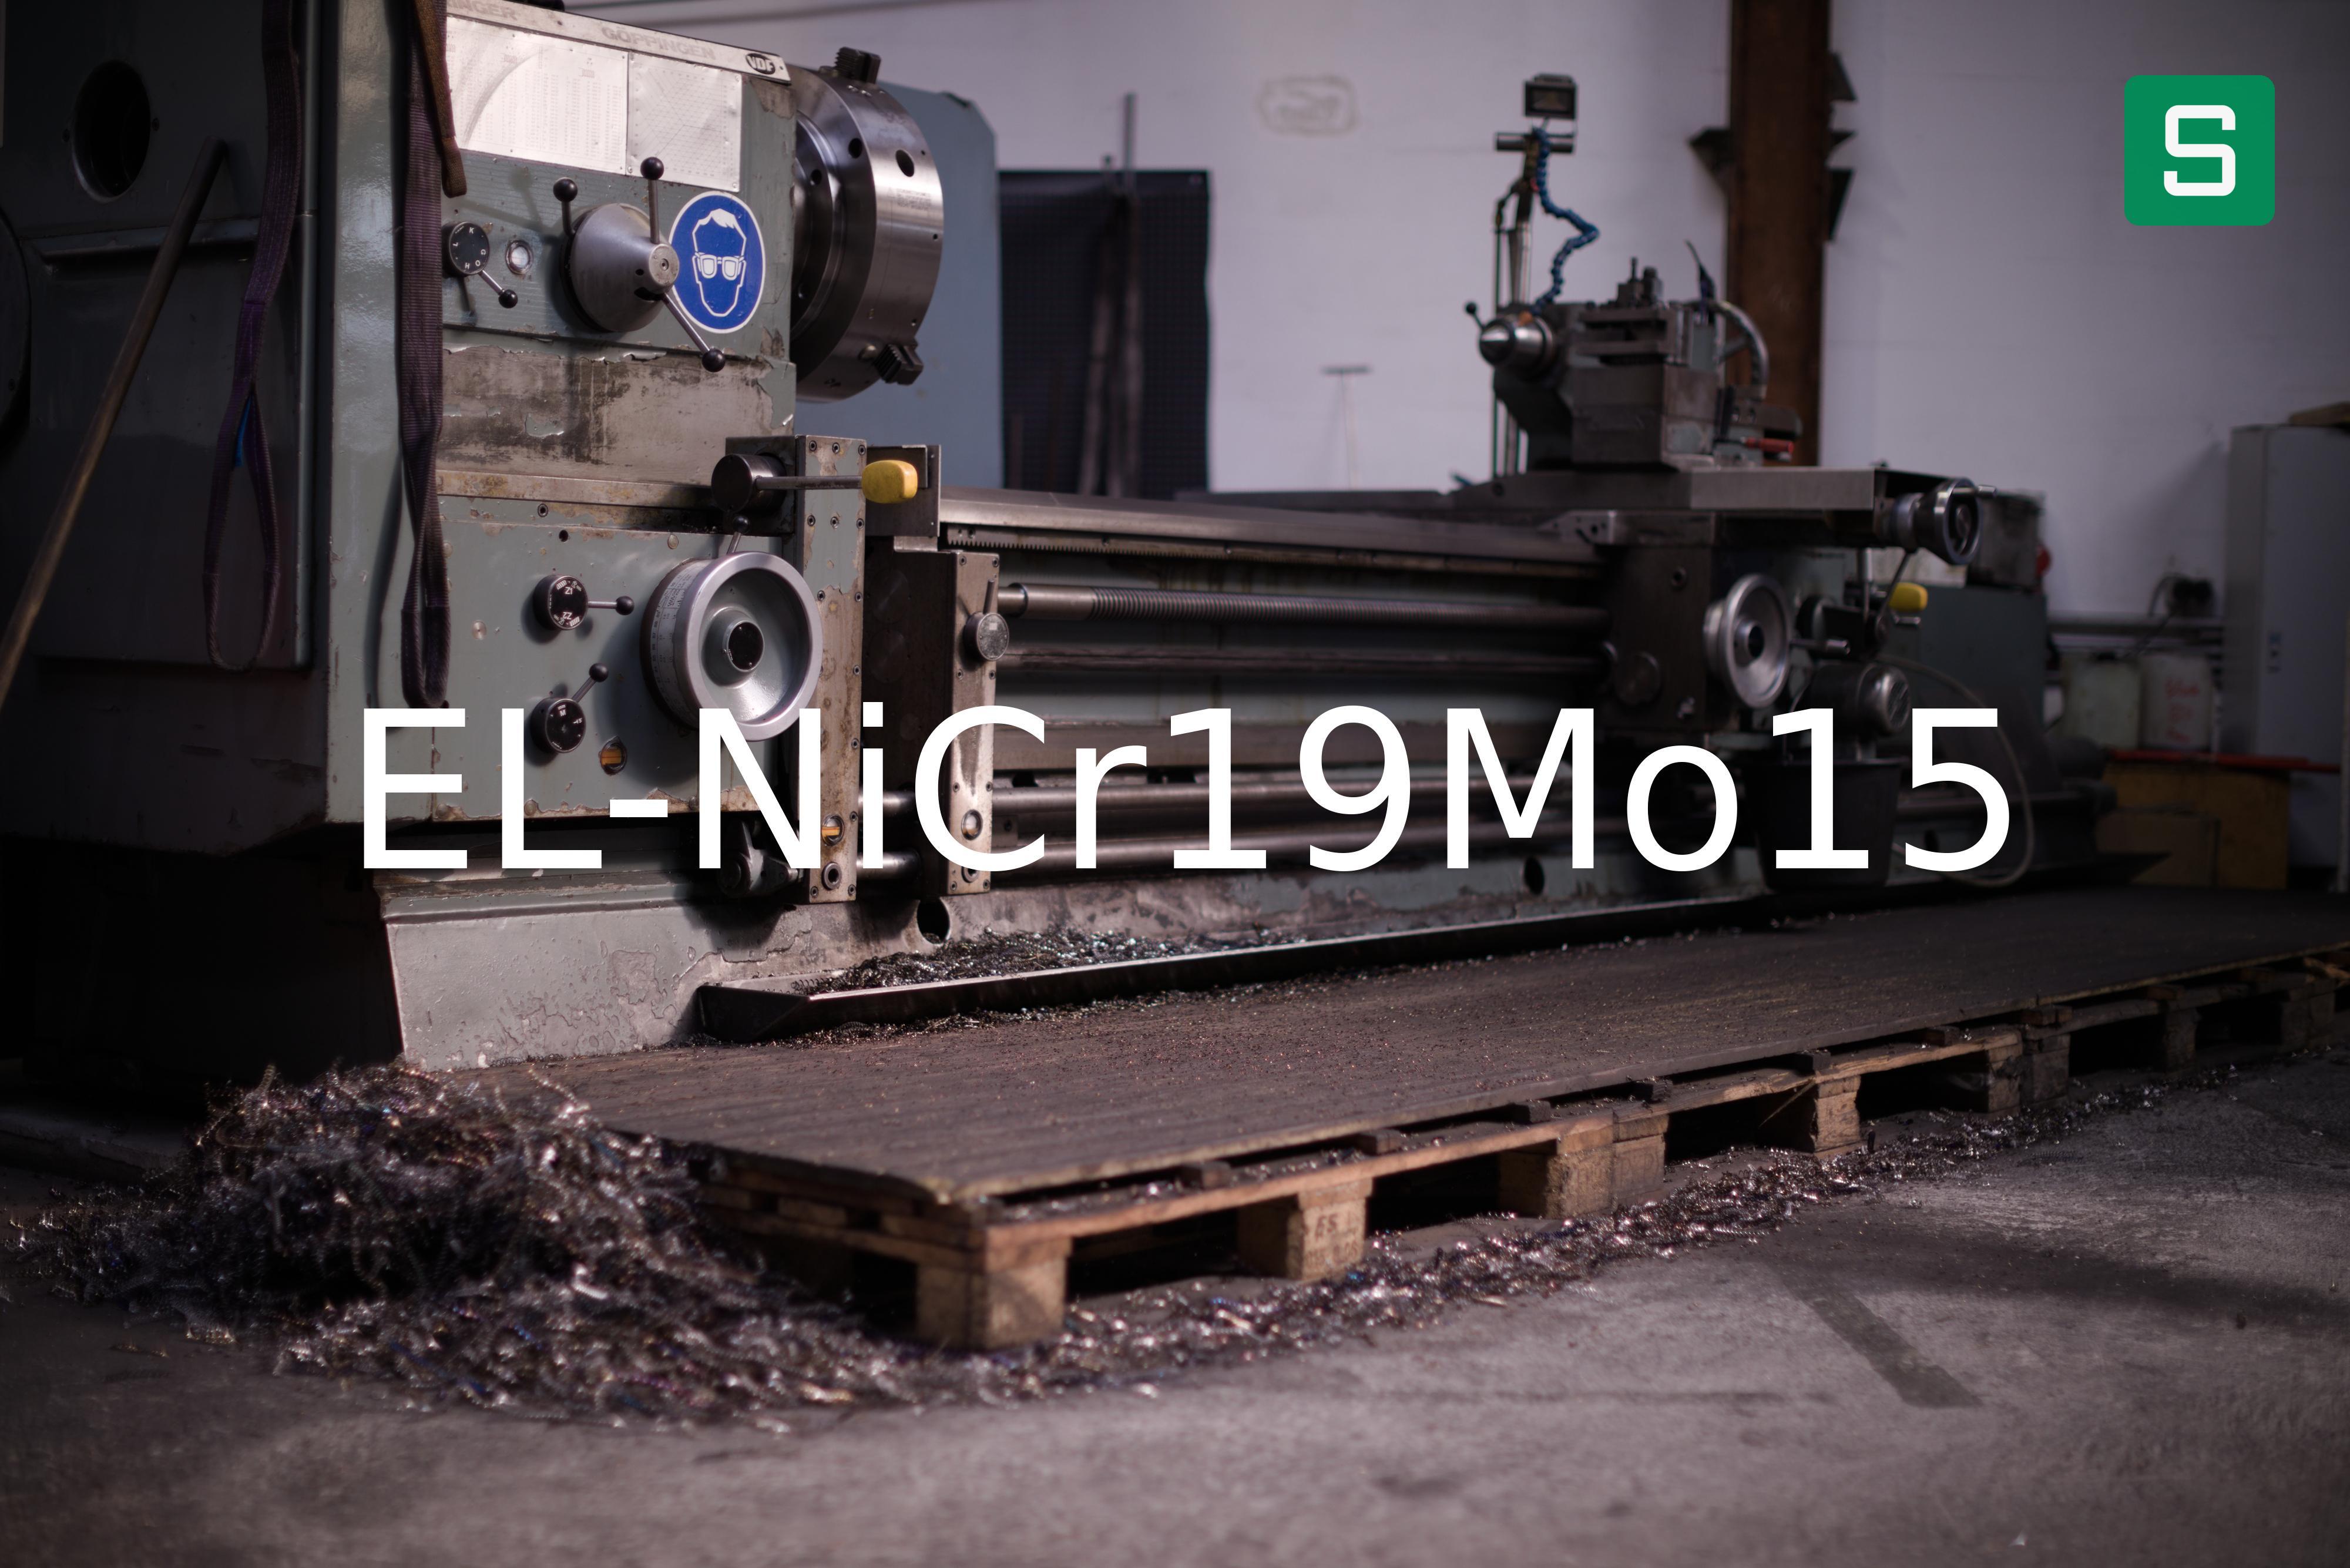 Steel Material: EL-NiCr19Mo15